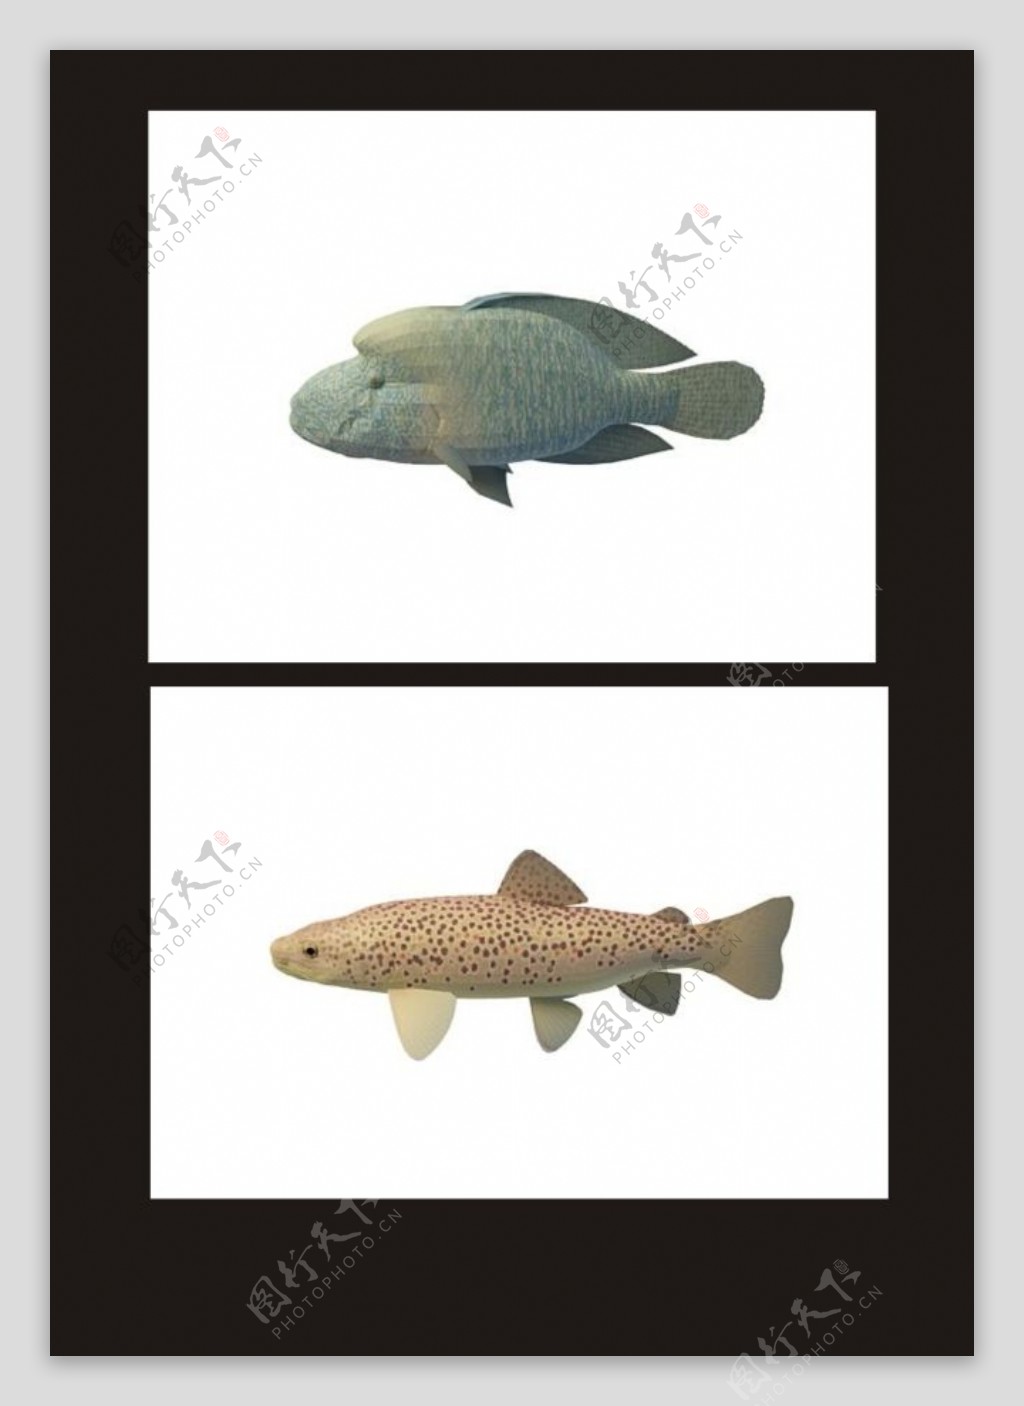 双色斑鱼石头鱼3d模型